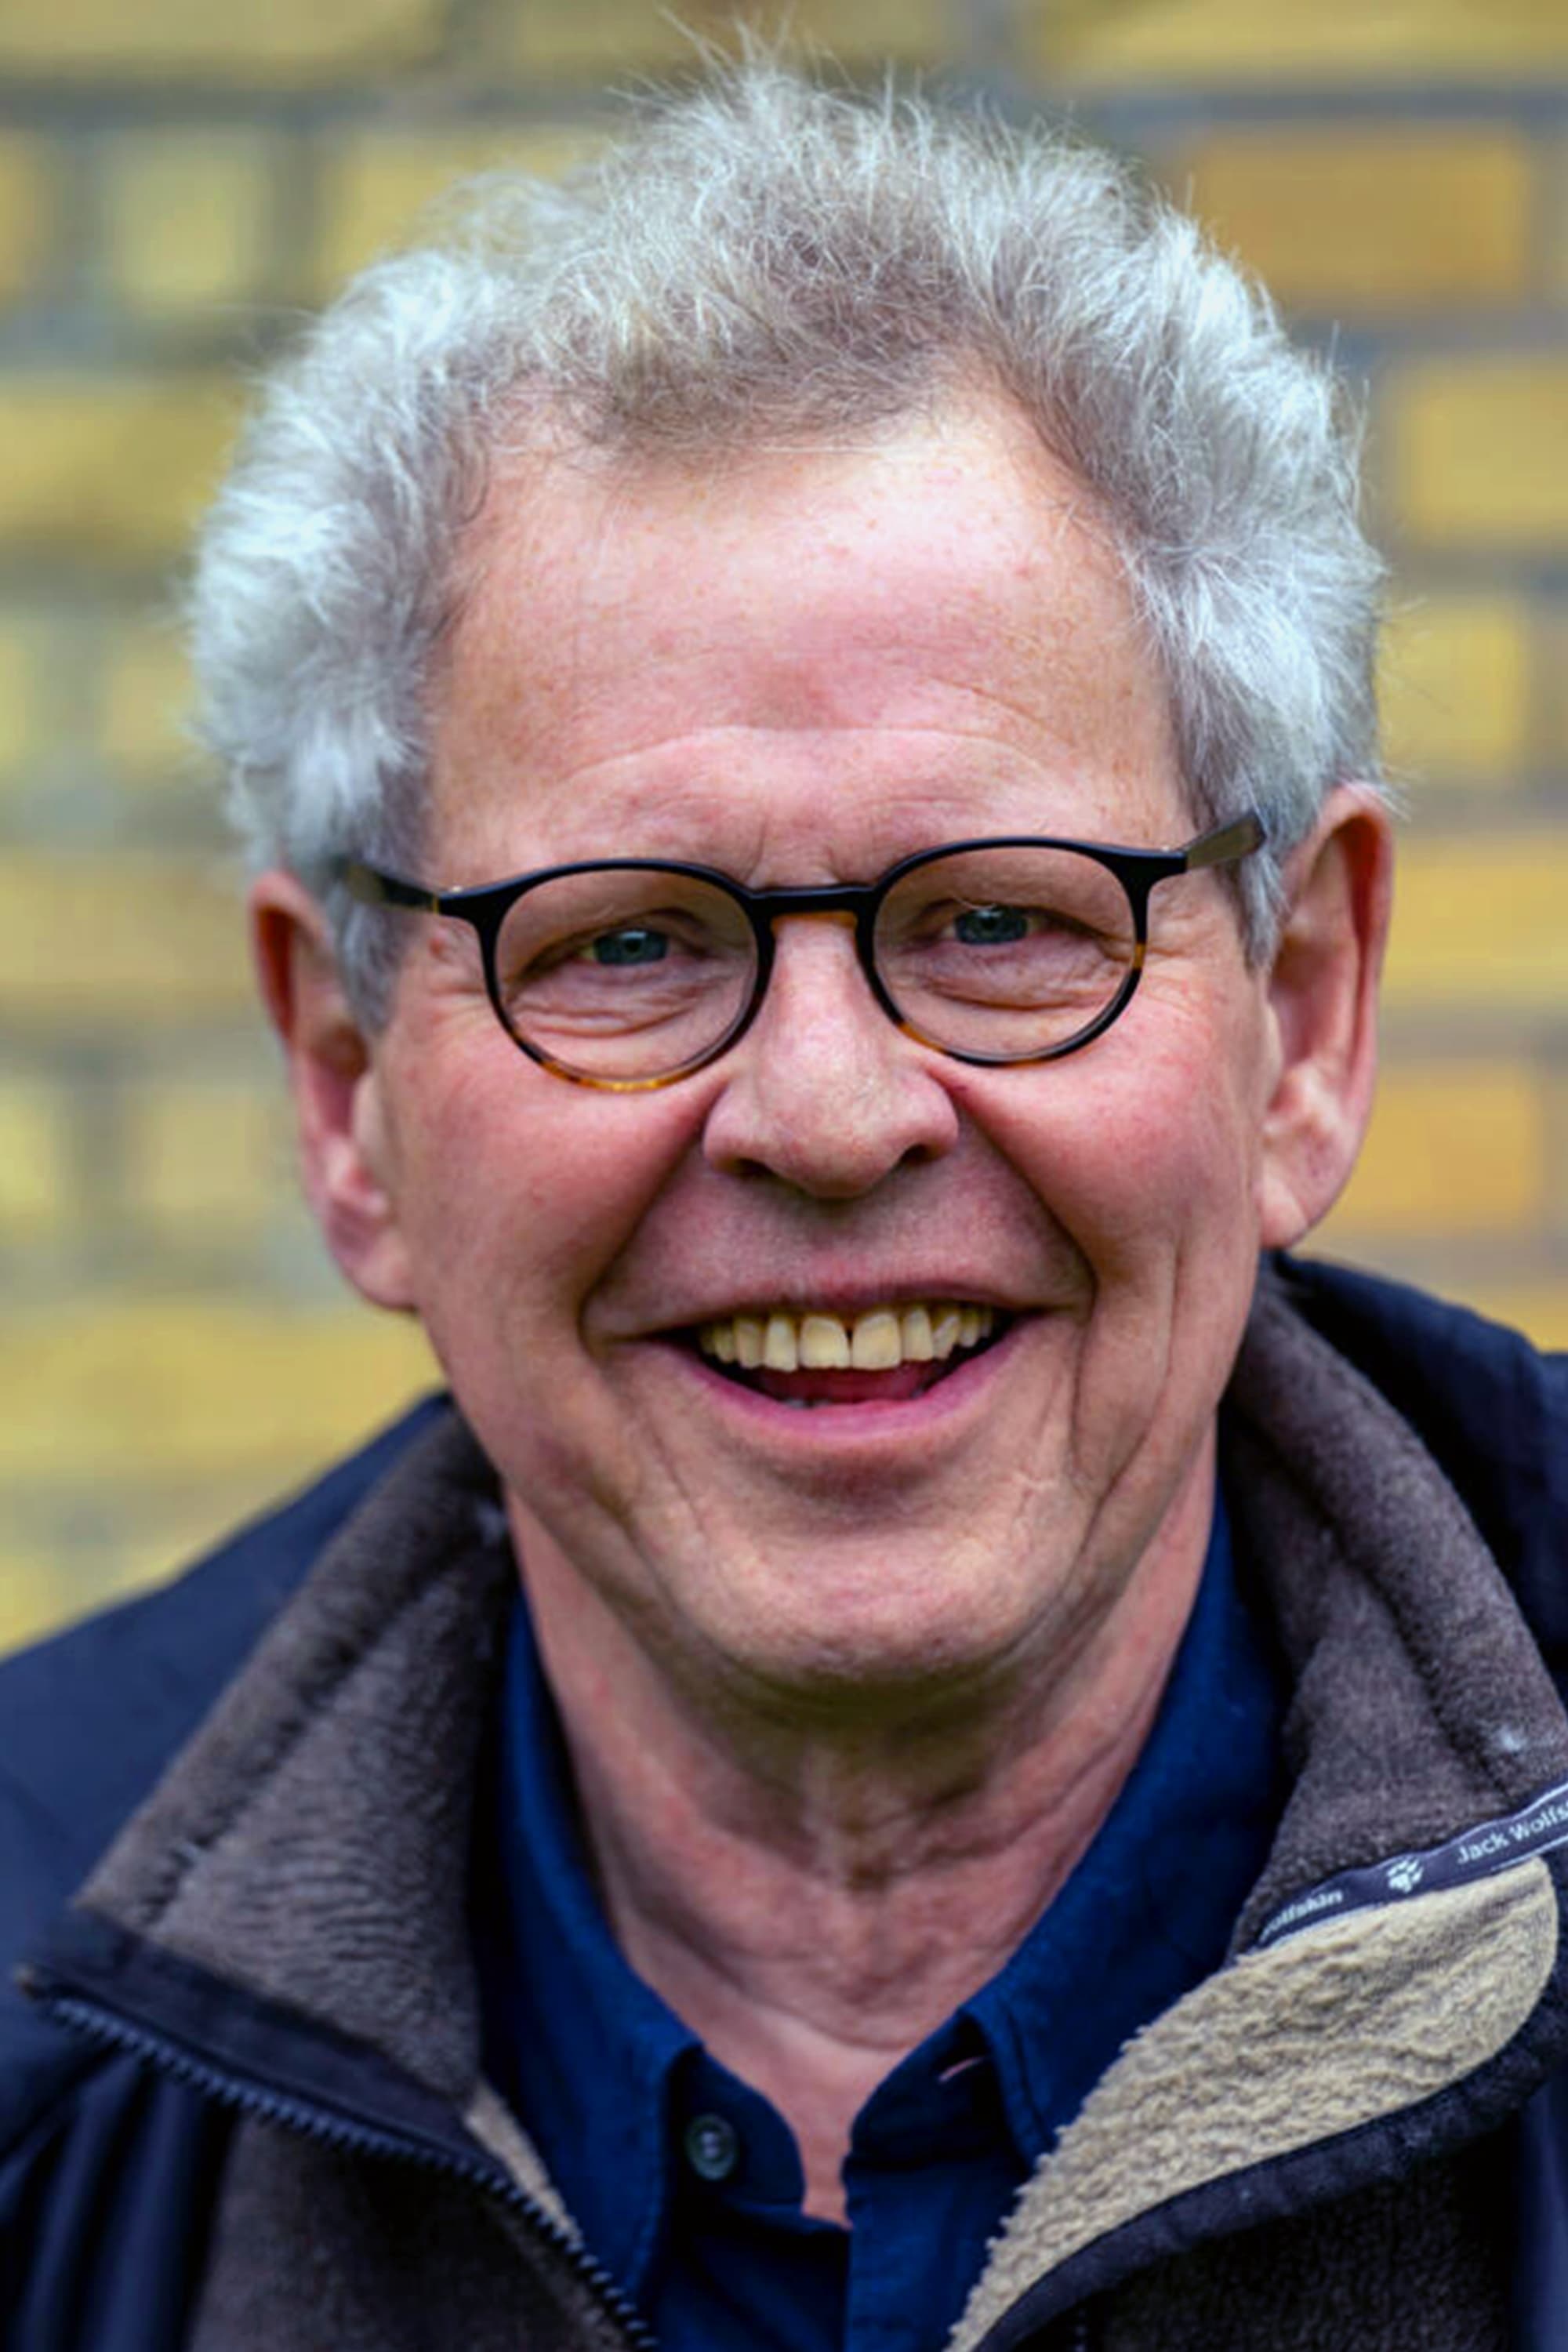 Søren Kragh-Jacobsen